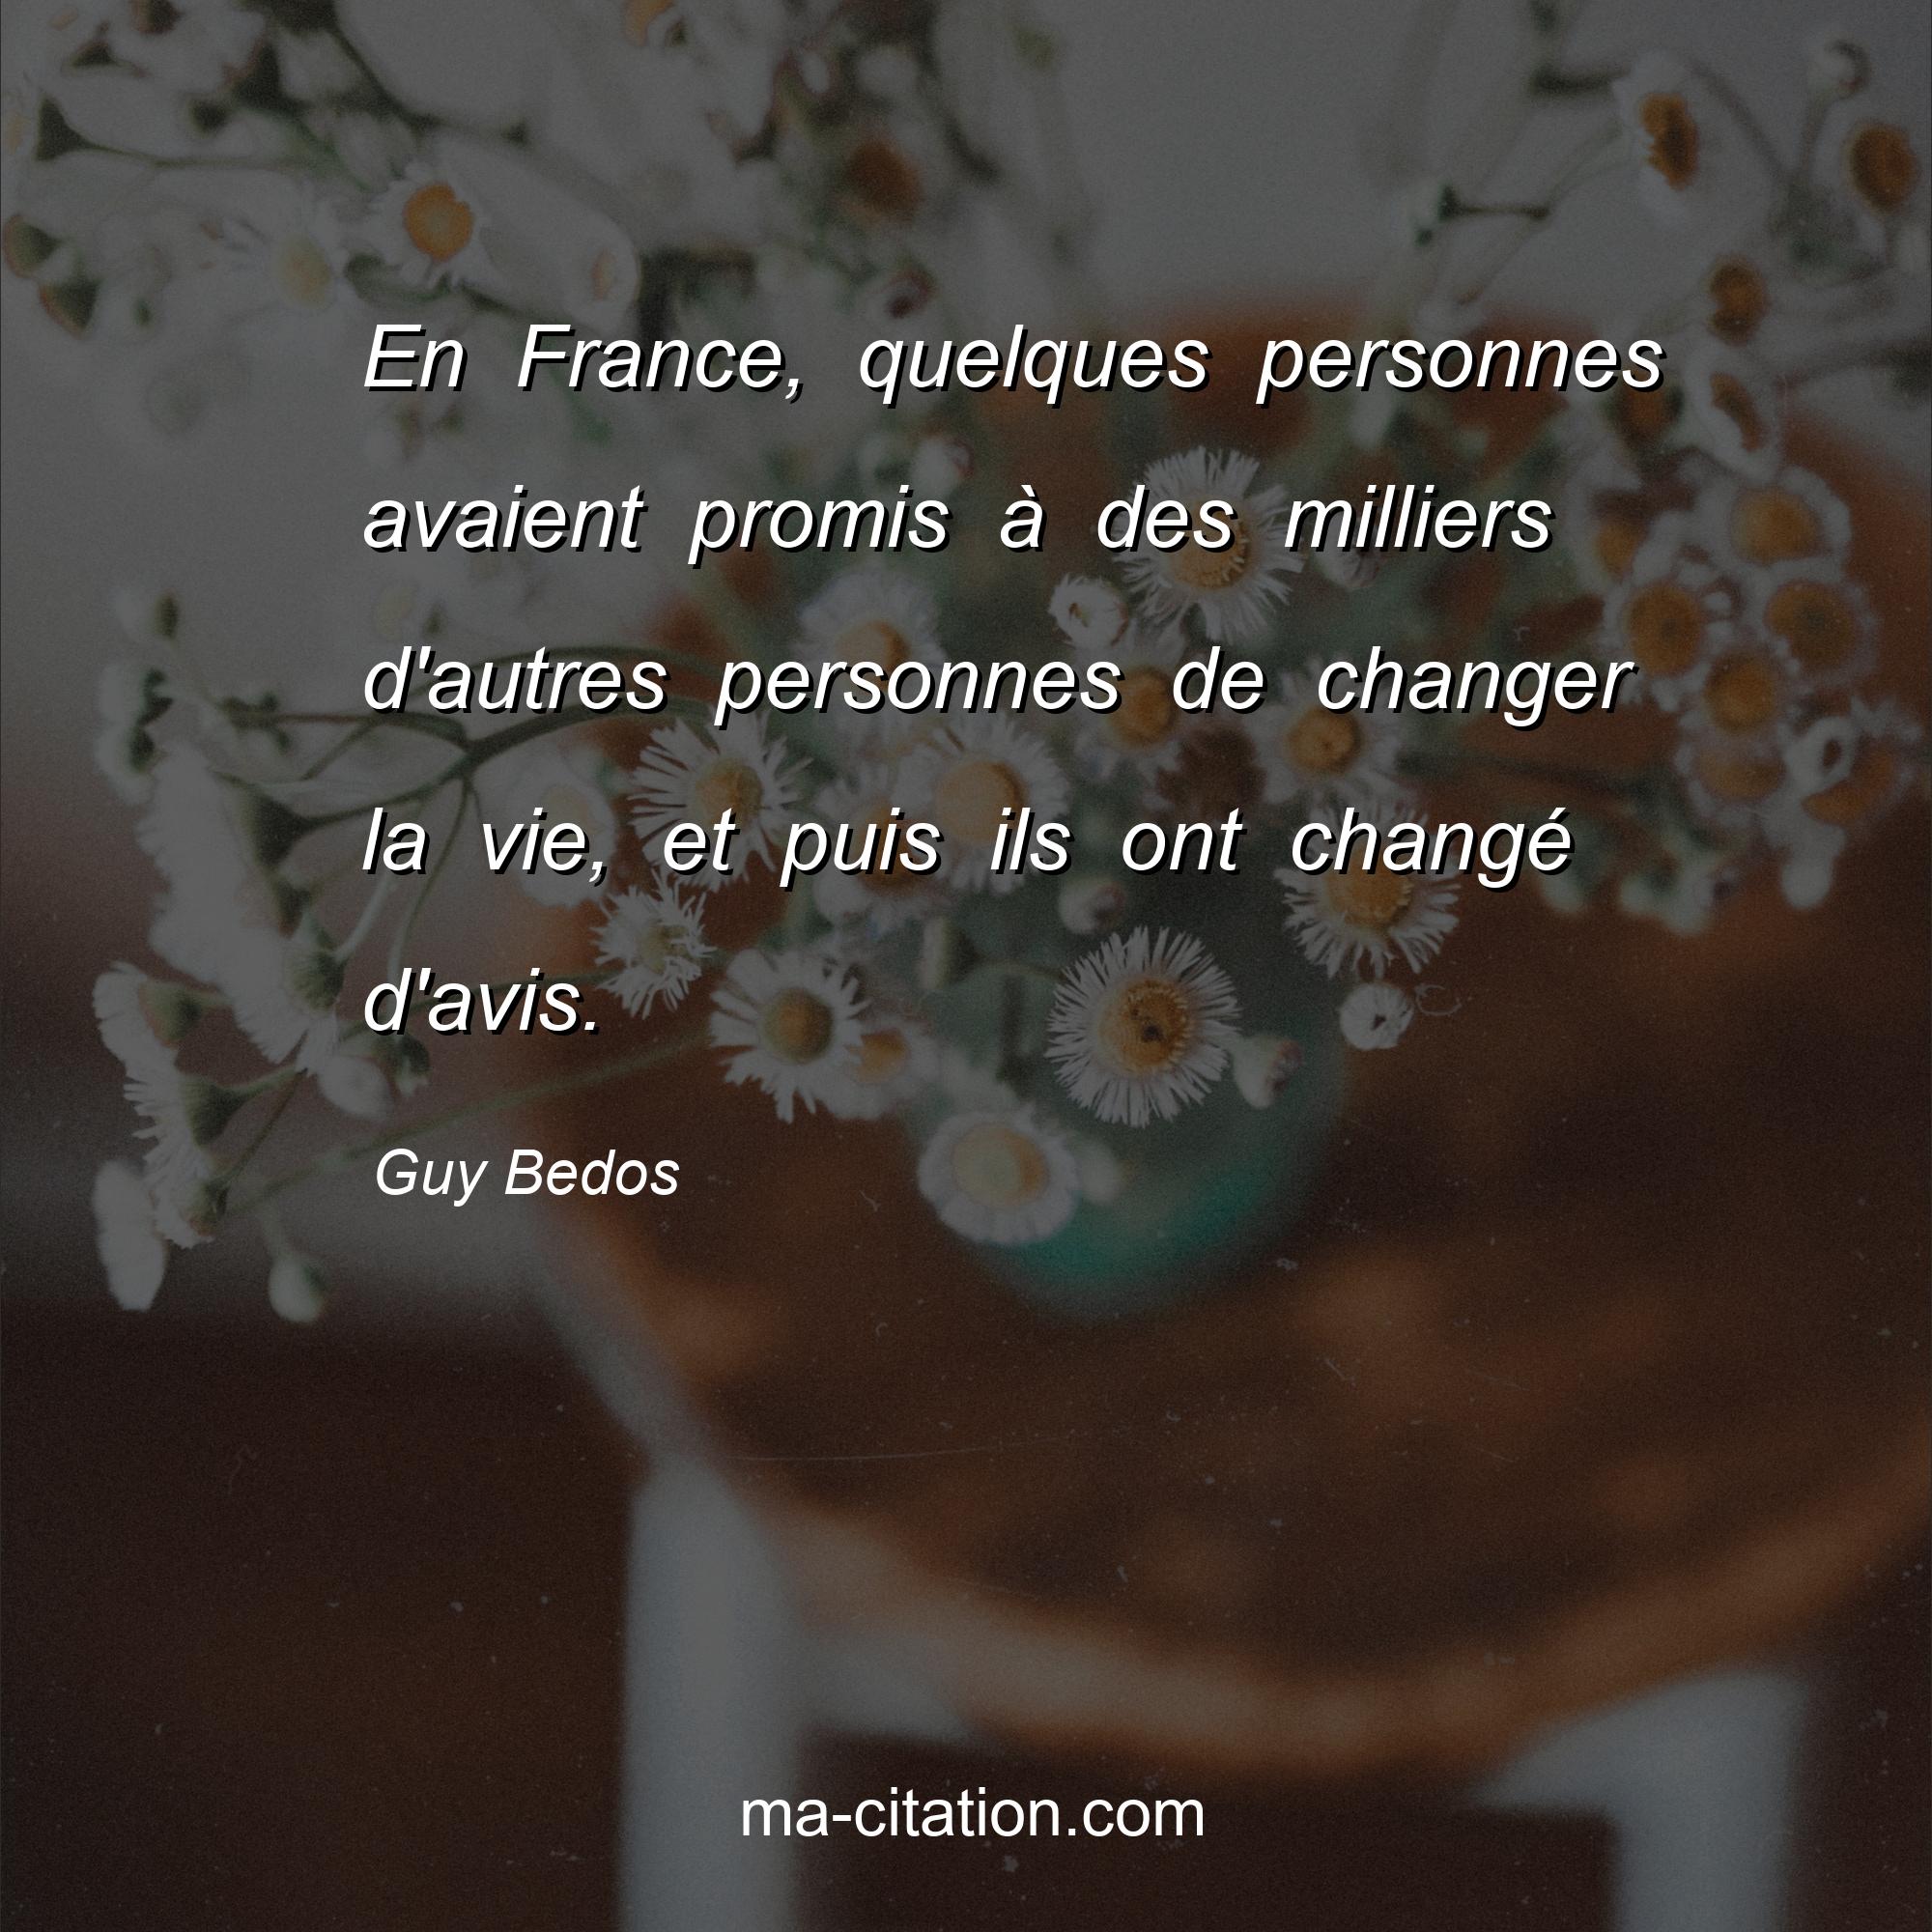 Guy Bedos : En France, quelques personnes avaient promis à des milliers d'autres personnes de changer la vie, et puis ils ont changé d'avis.